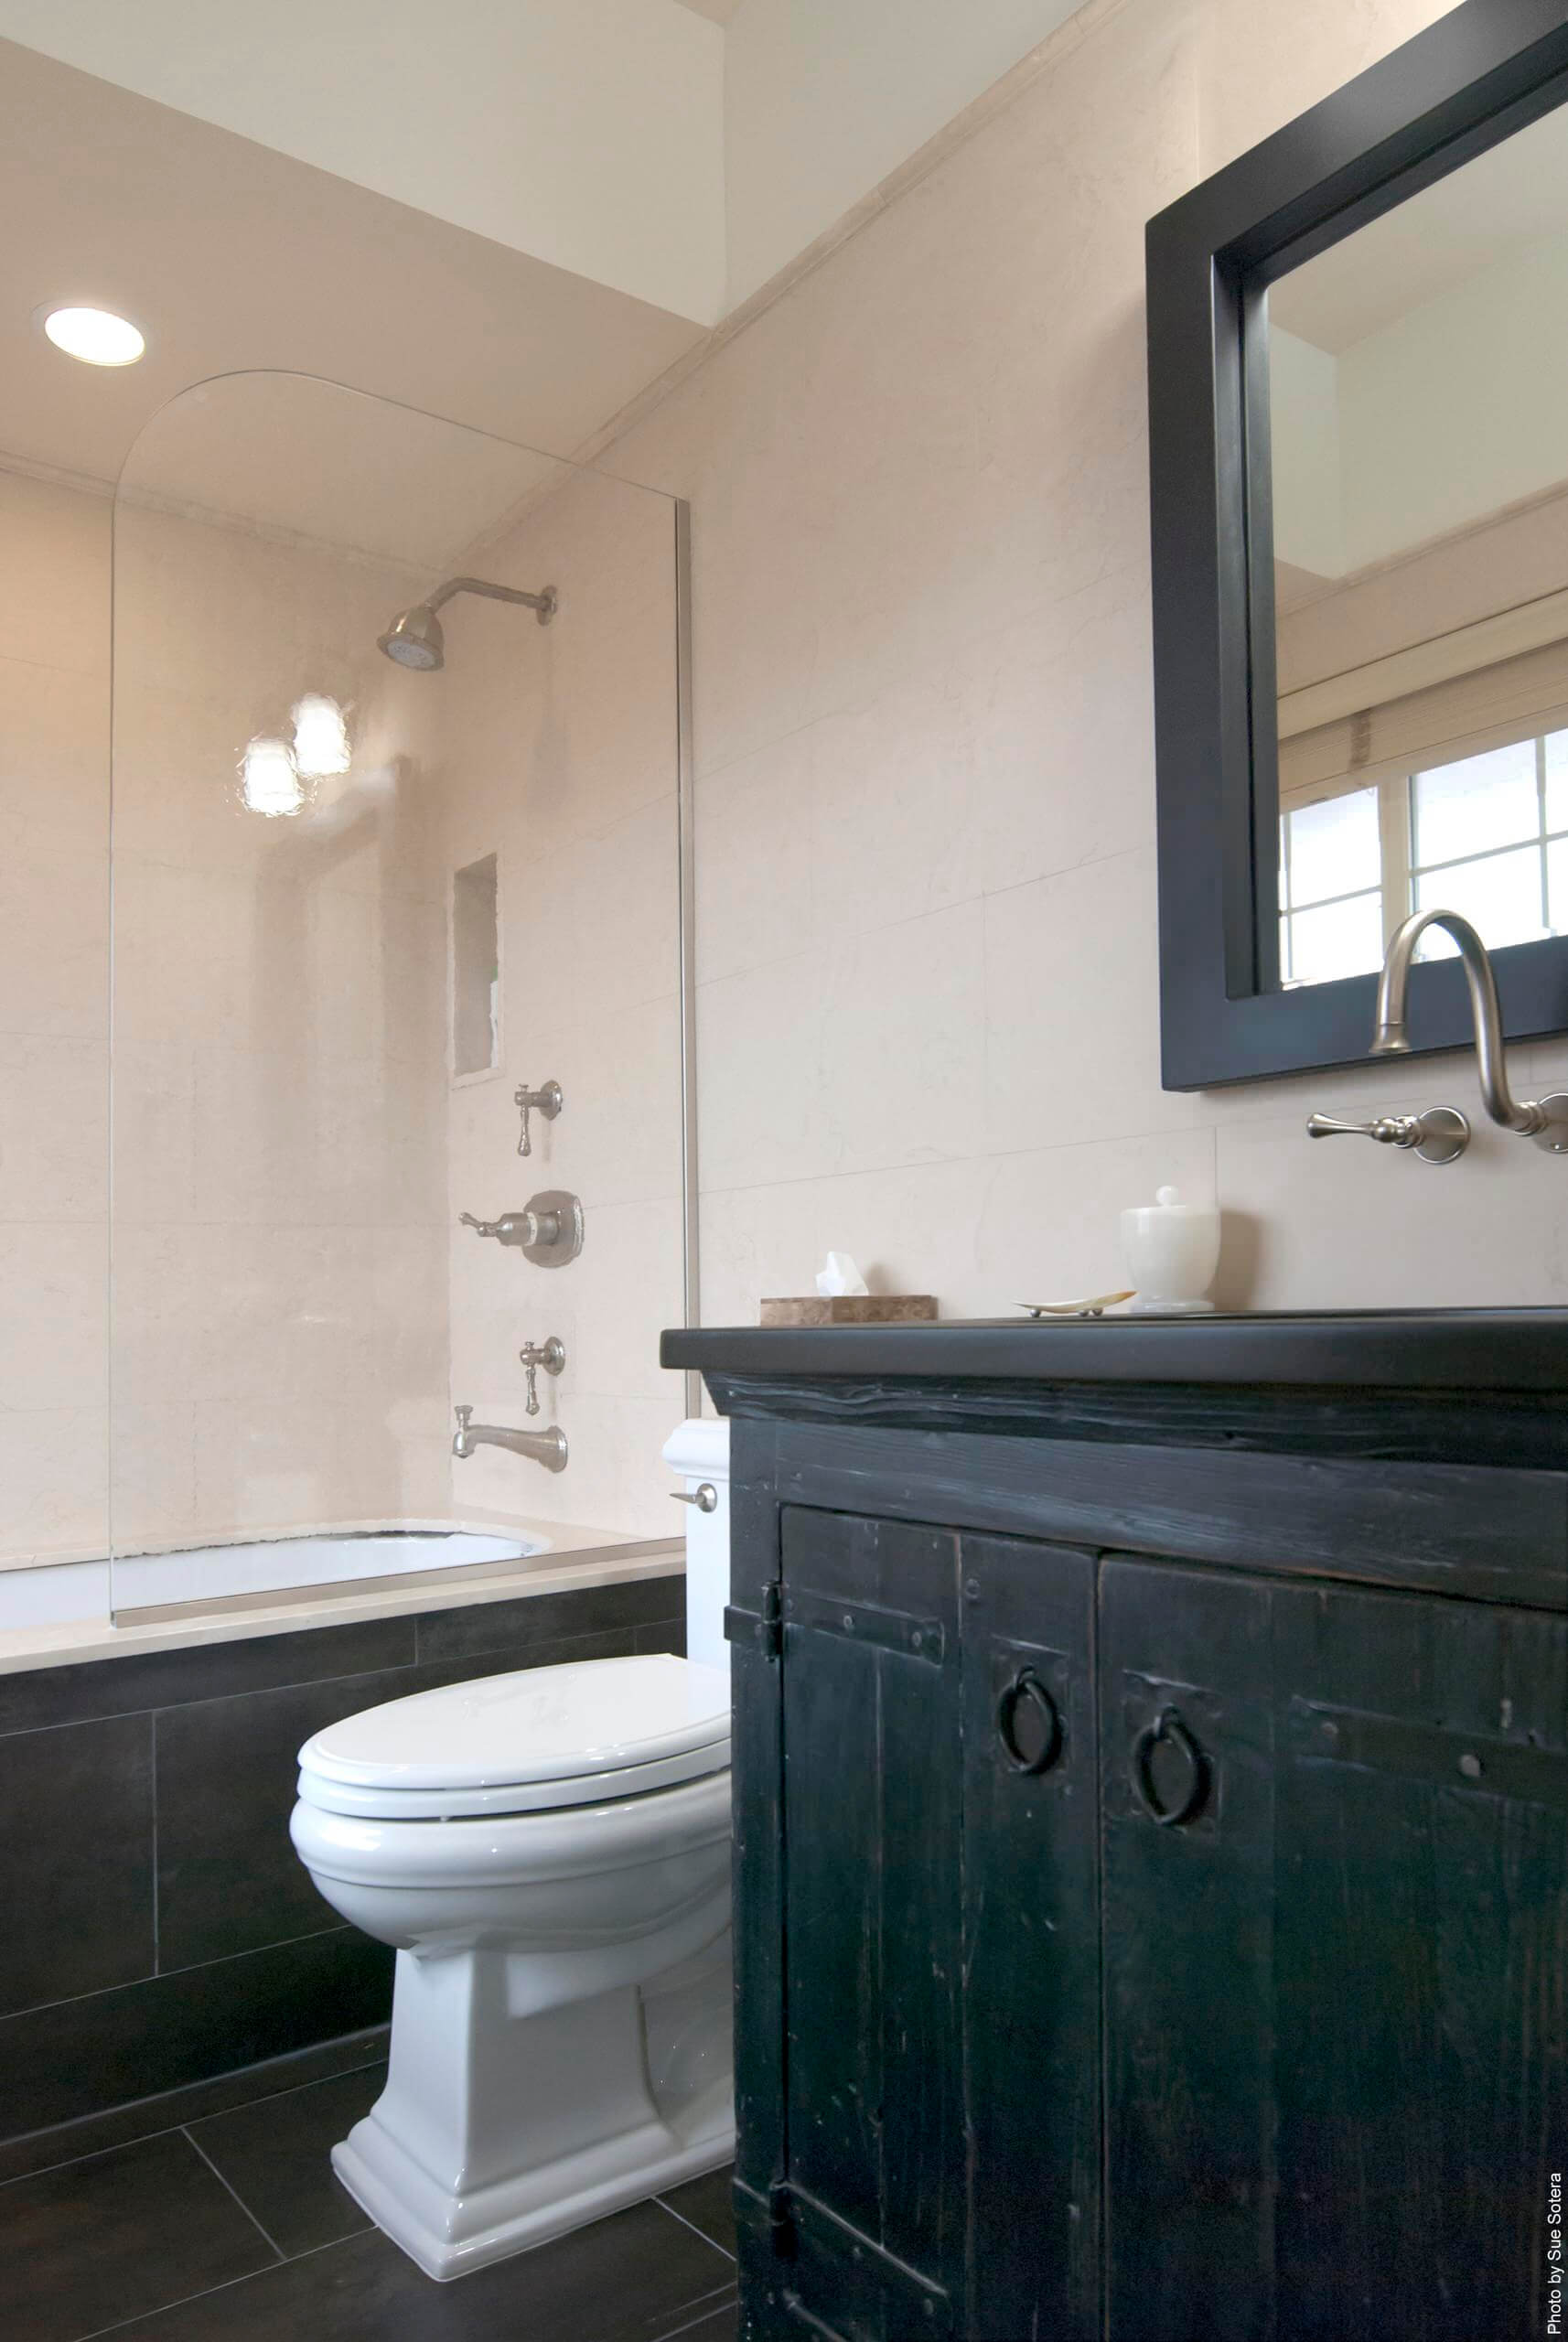 9 contemporary bathroom faucet designs